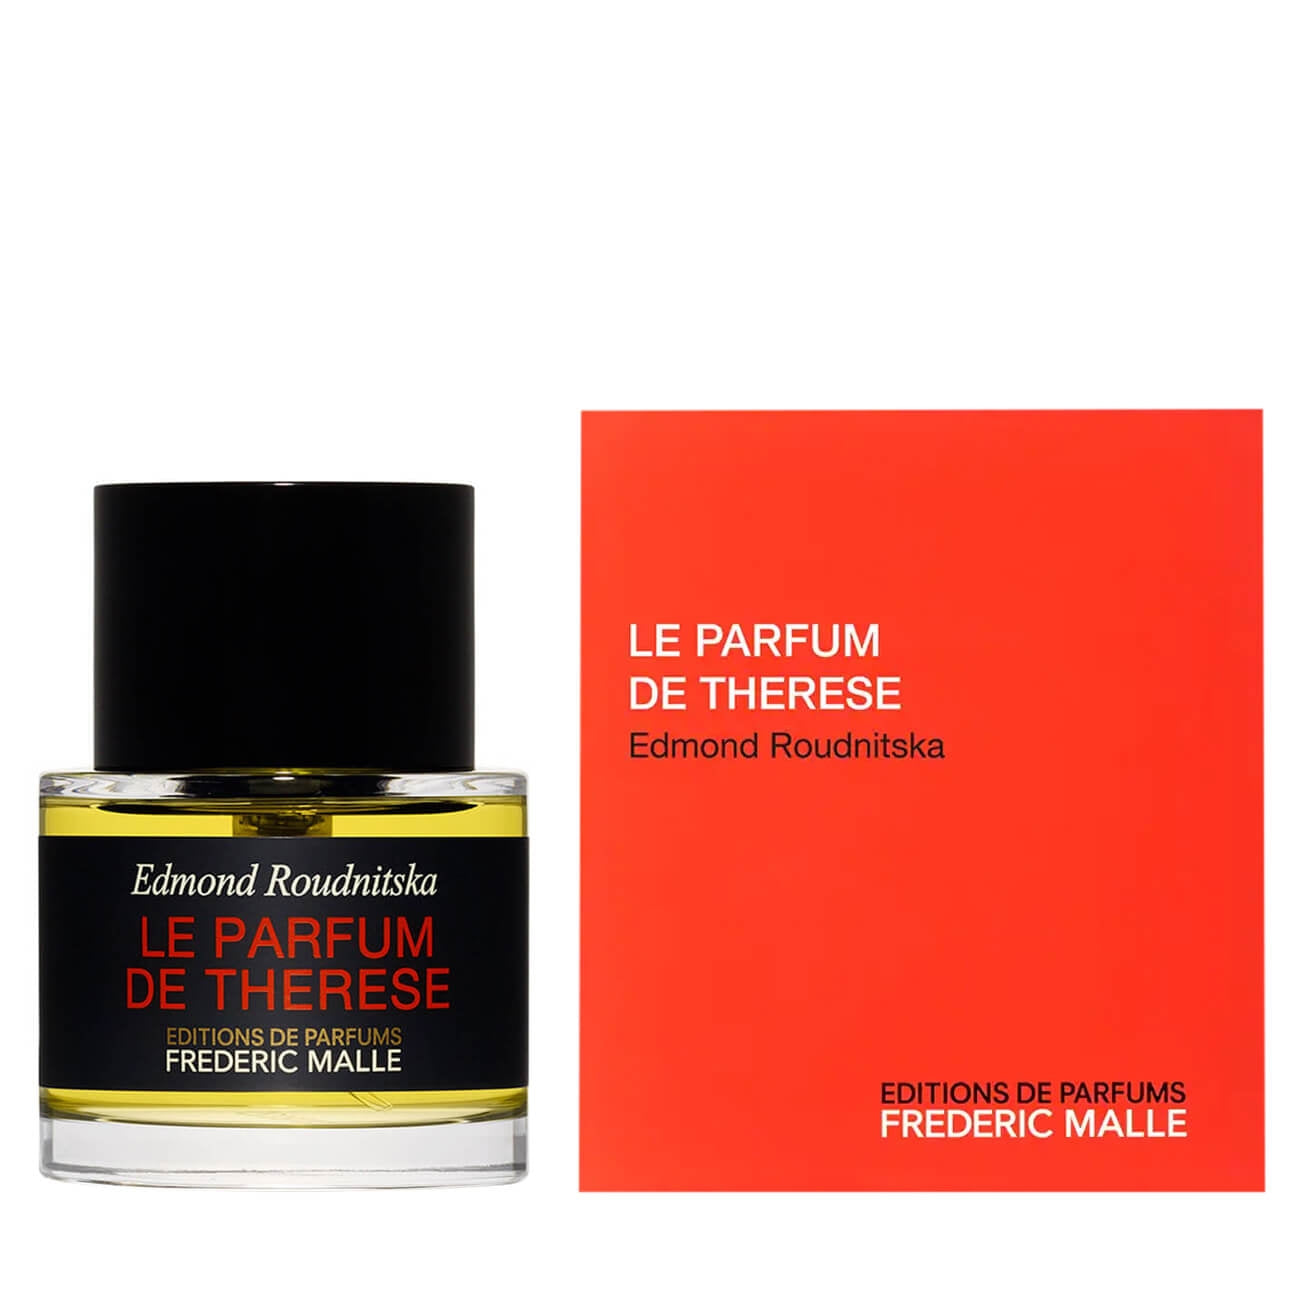 Editions de Parfums Frederic Malle - Le Parfum de Thérése.